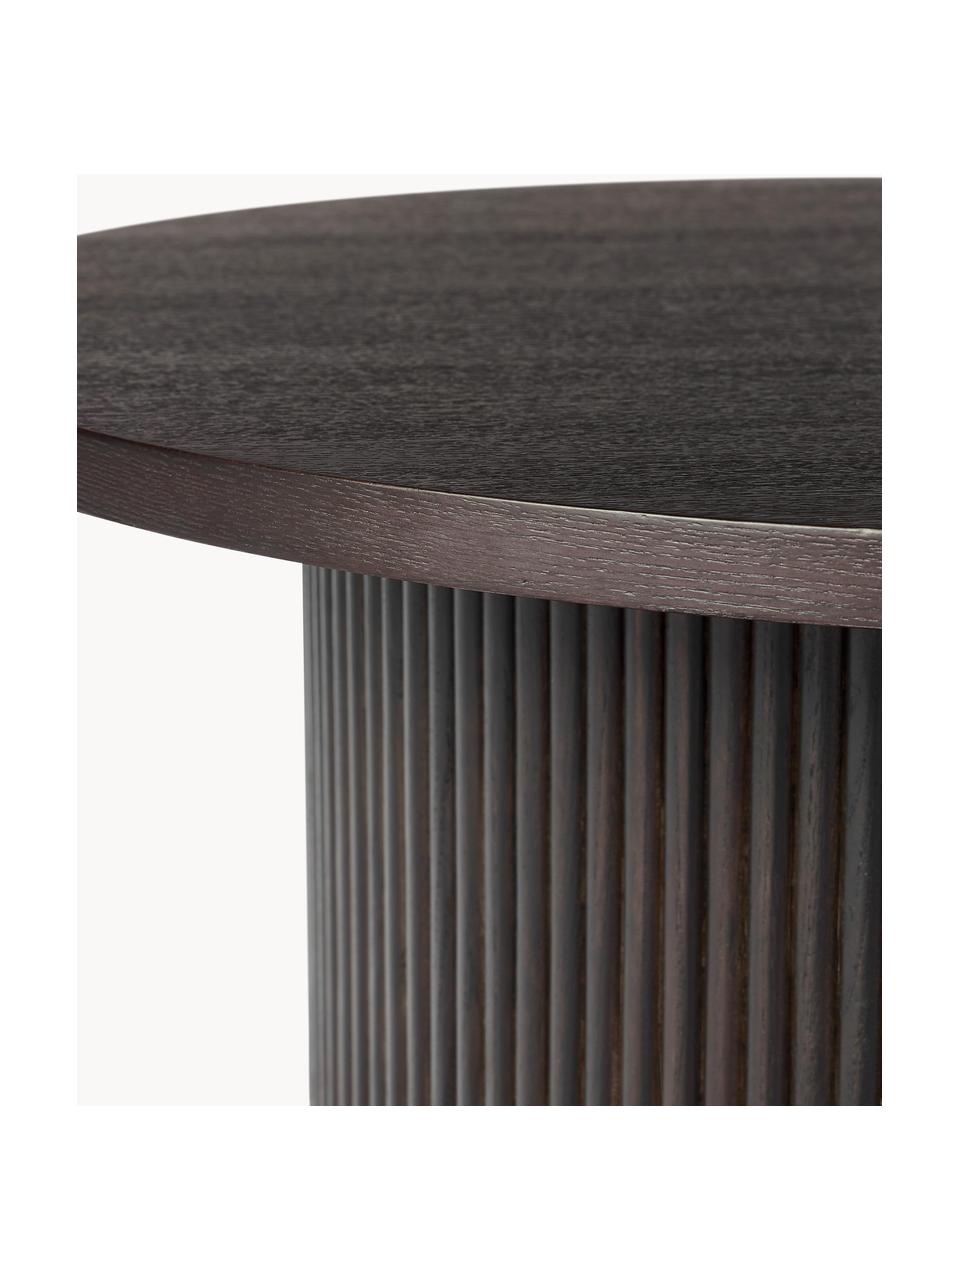 Kulatý dřevěný konferenční stolek Nele, Dřevovláknitá deska střední hustoty (MDF) s jasanovou dýhou

Tento produkt je vyroben z udržitelných zdrojů dřeva s certifikací FSC®., Dřevo, tmavě hnědě lakované, Ø 85 cm, V 33 cm